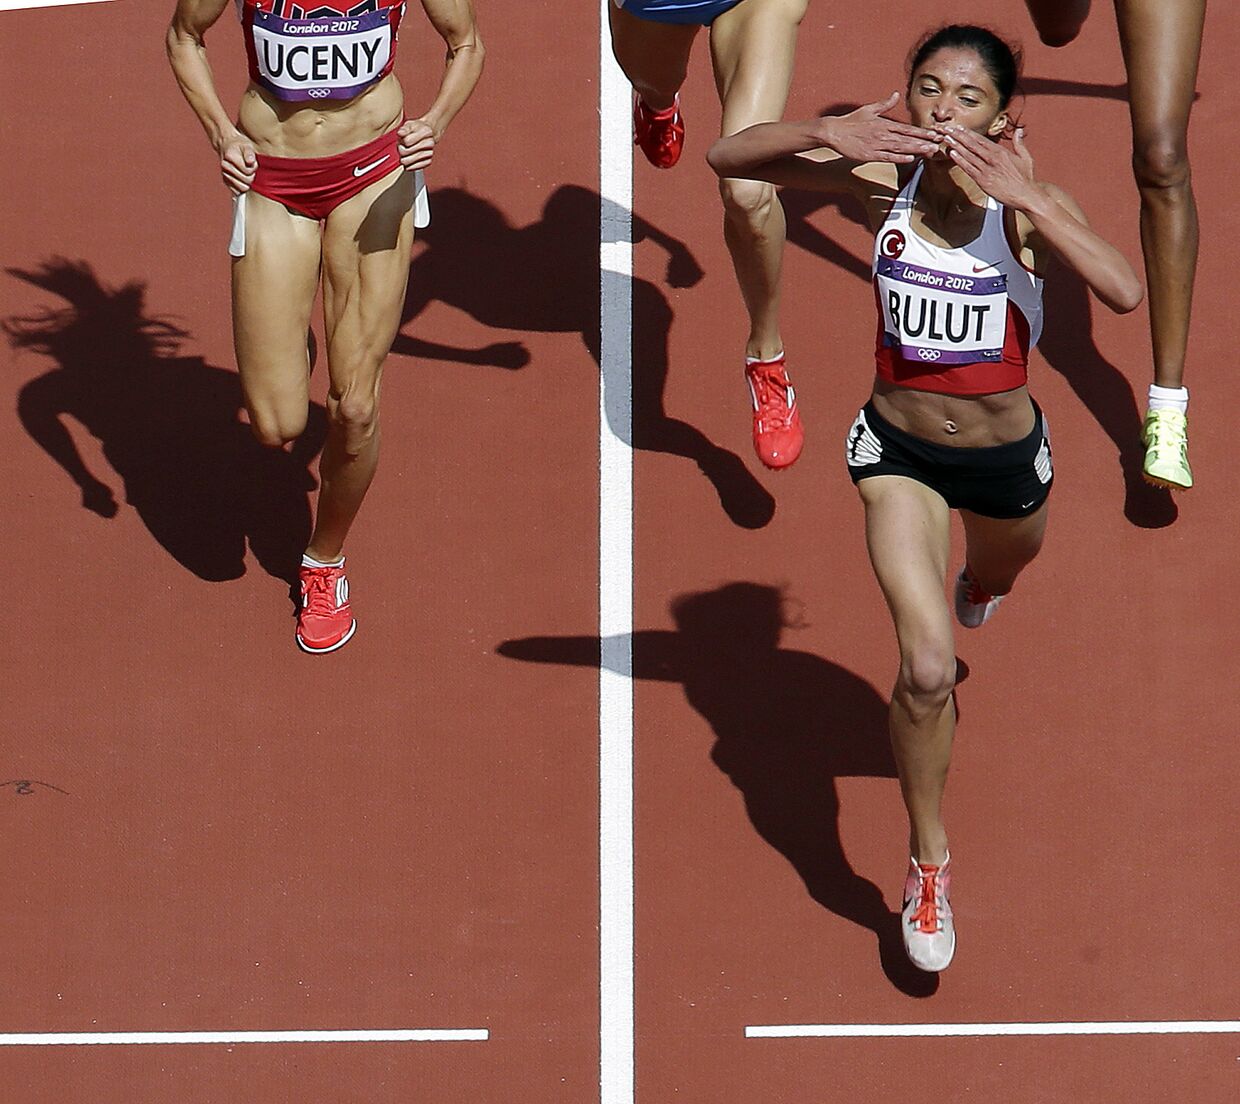 Турецкая спортсменка Гамзе Булут после победы в забеге на 1500 метров во время Олимпийских игр 2012 года в Лондоне